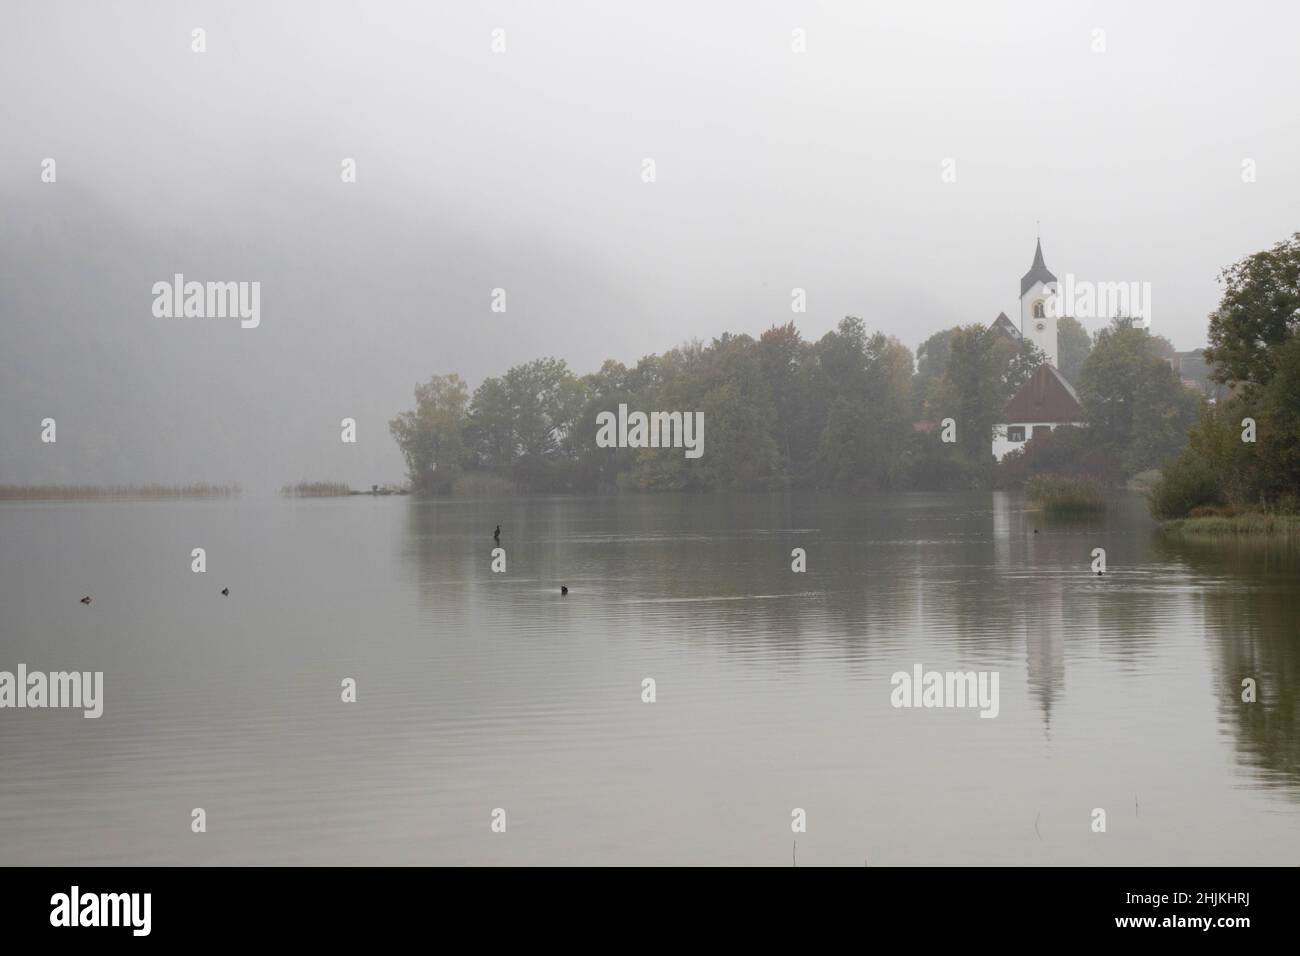 Die Nebel verhangene Landschaft des Weißensee macht einen mystischen Eindruck Stock Photo